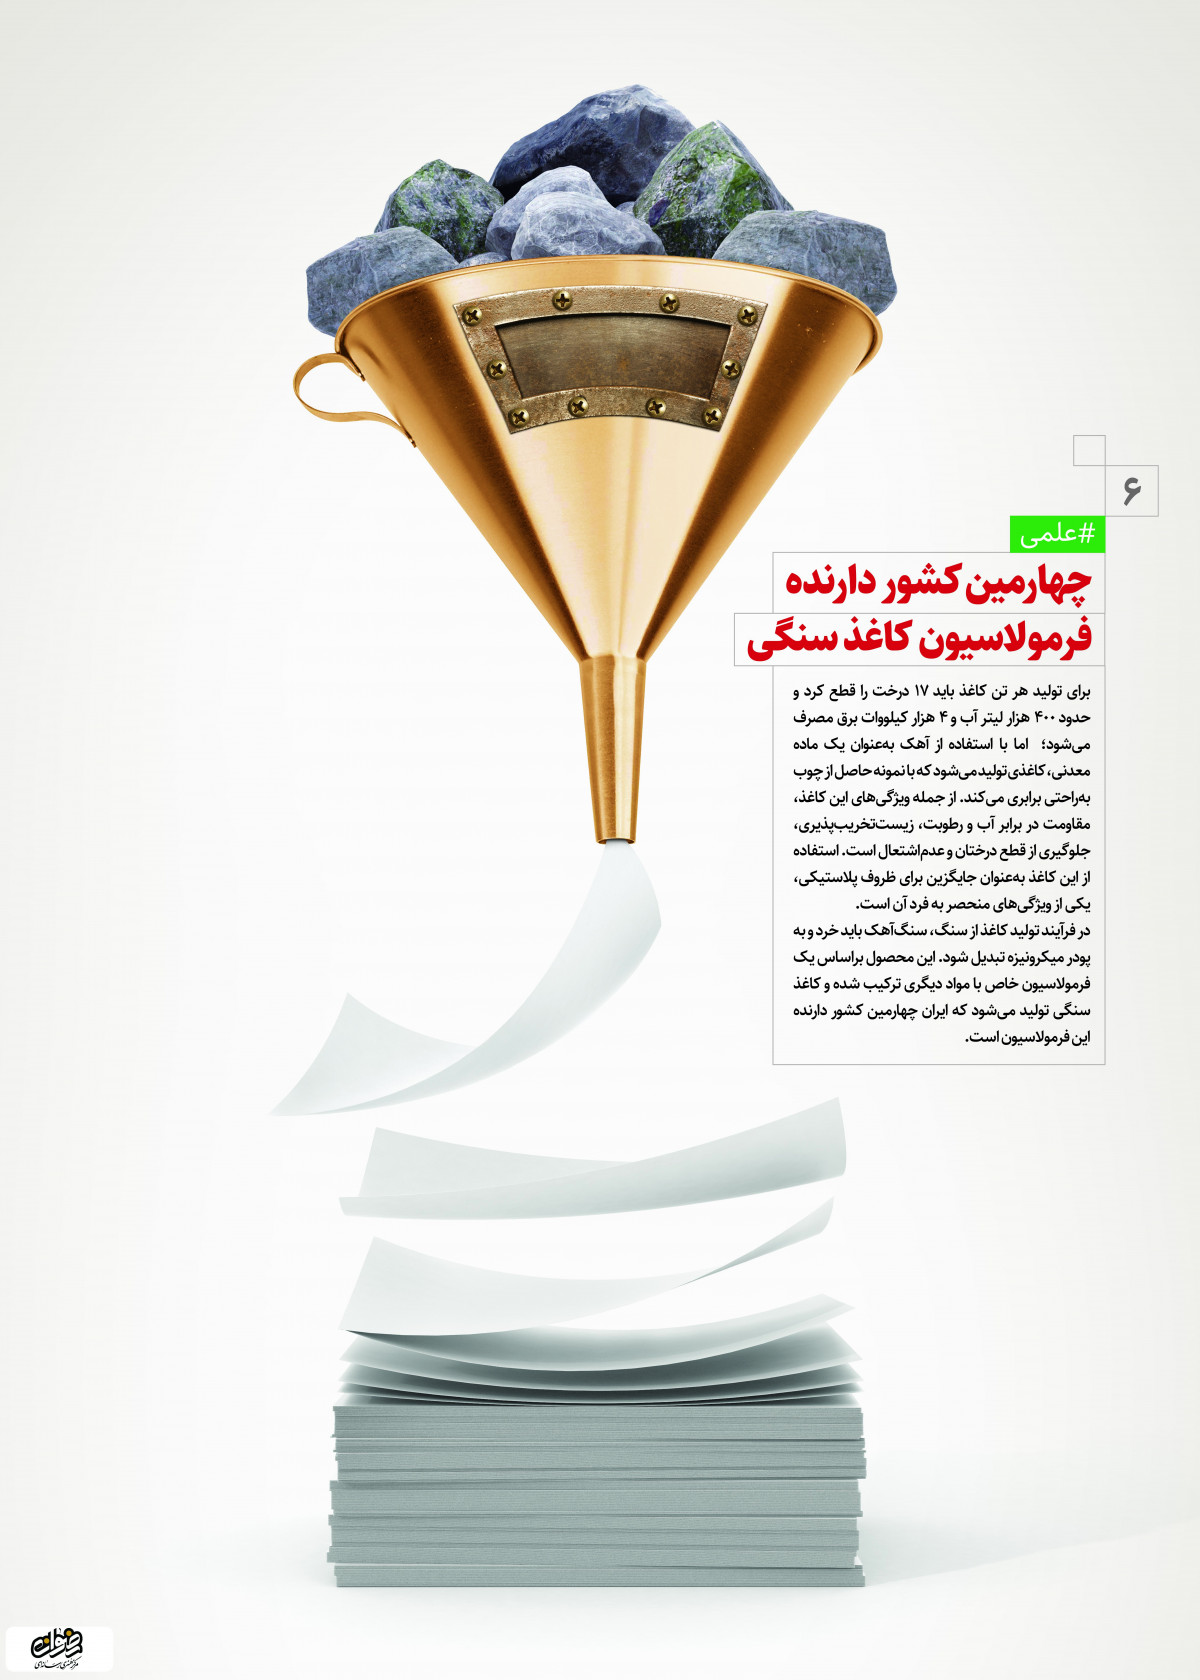 پوستر: دستاوردهای انقلاب اسلامی چهارمین کشور دارنده فرمو لاسیون کاغذ سنگی